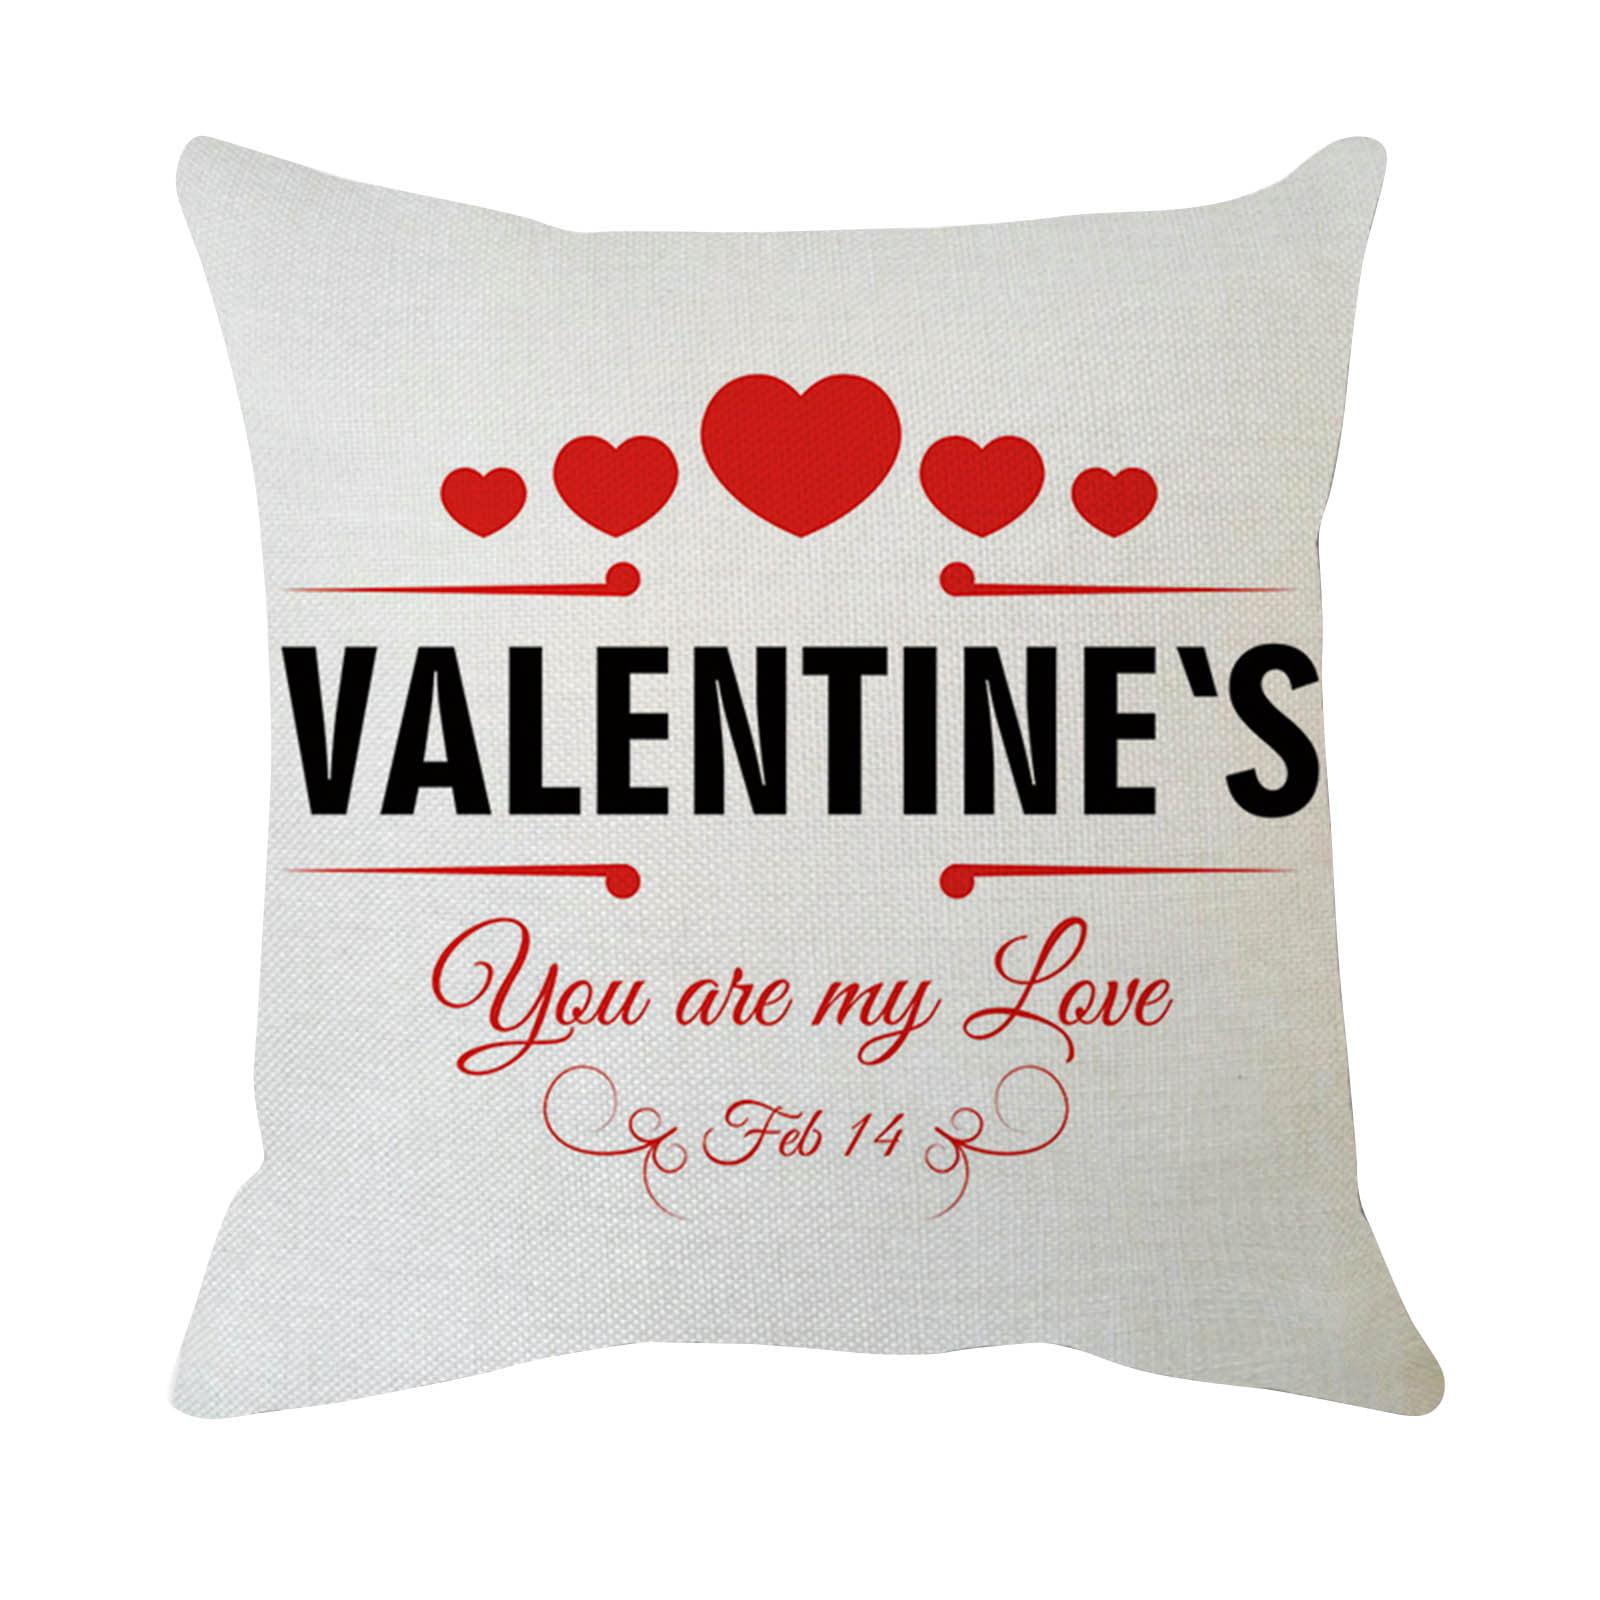 Valenti e's day gift Decorative pillow cover decorative pillow,pillow,cover,pillow cover,woman